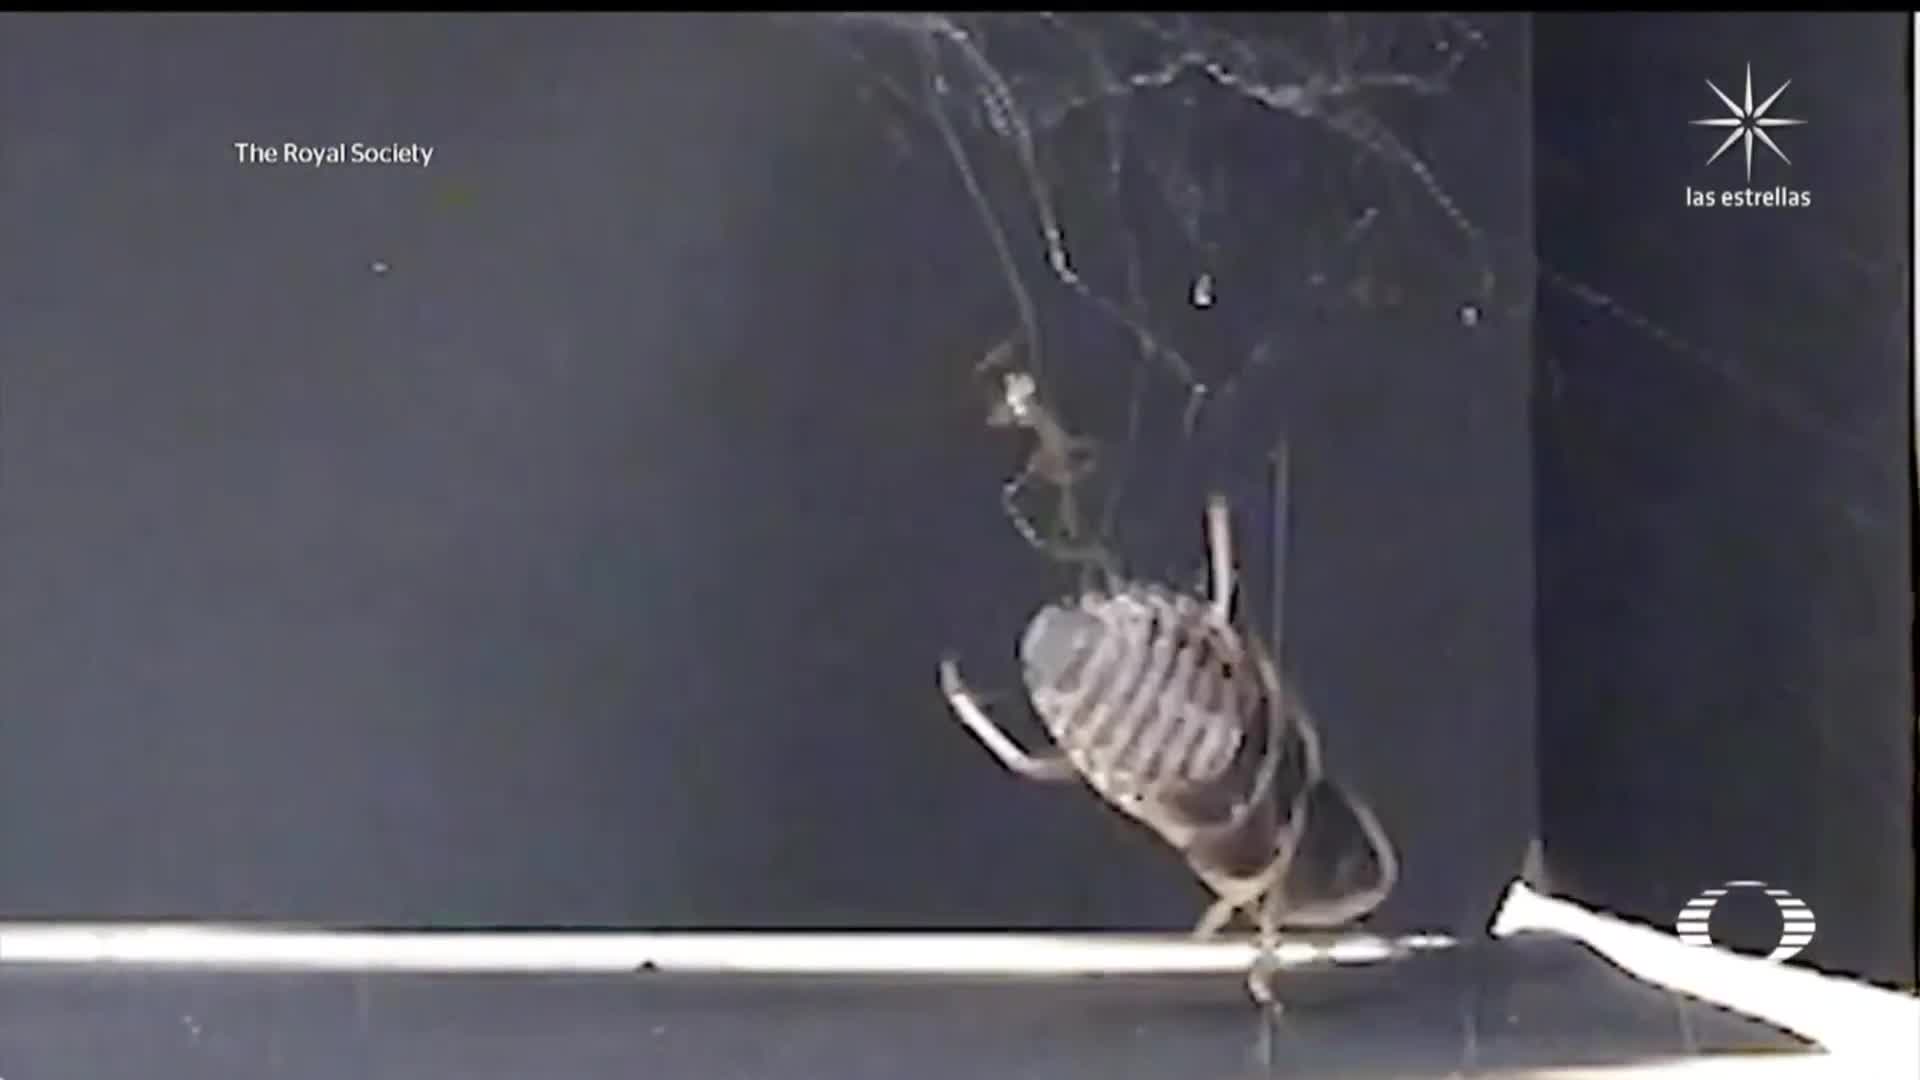 aranas comunes son capaces de atrapar insectos de hasta 50 veces su peso